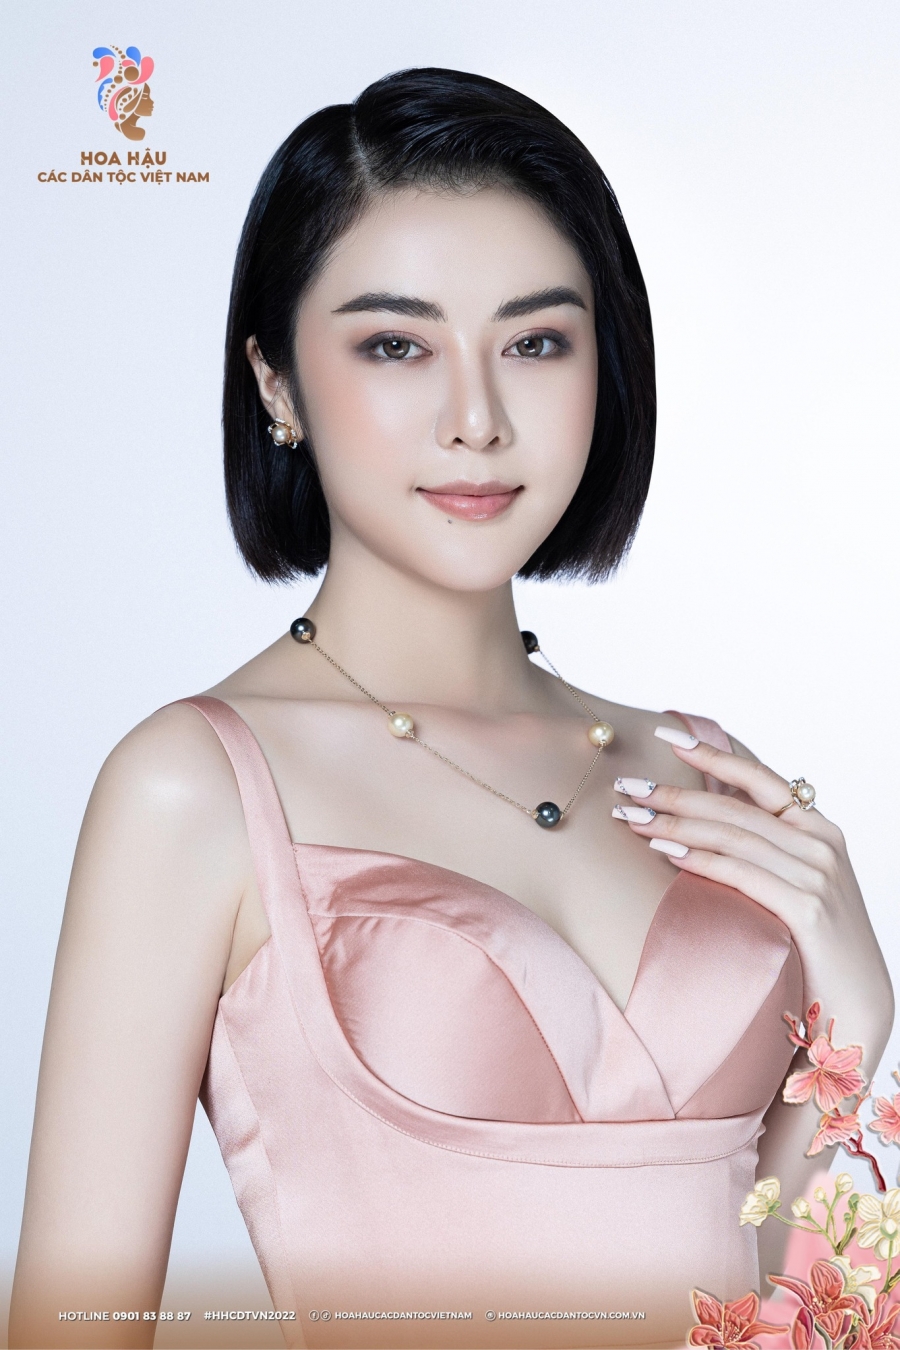 Nhan sắc cô gái Tày lọt vào mắt H'Hen Niê tại Hoa hậu các Dân tộc Việt Nam - Ảnh 3